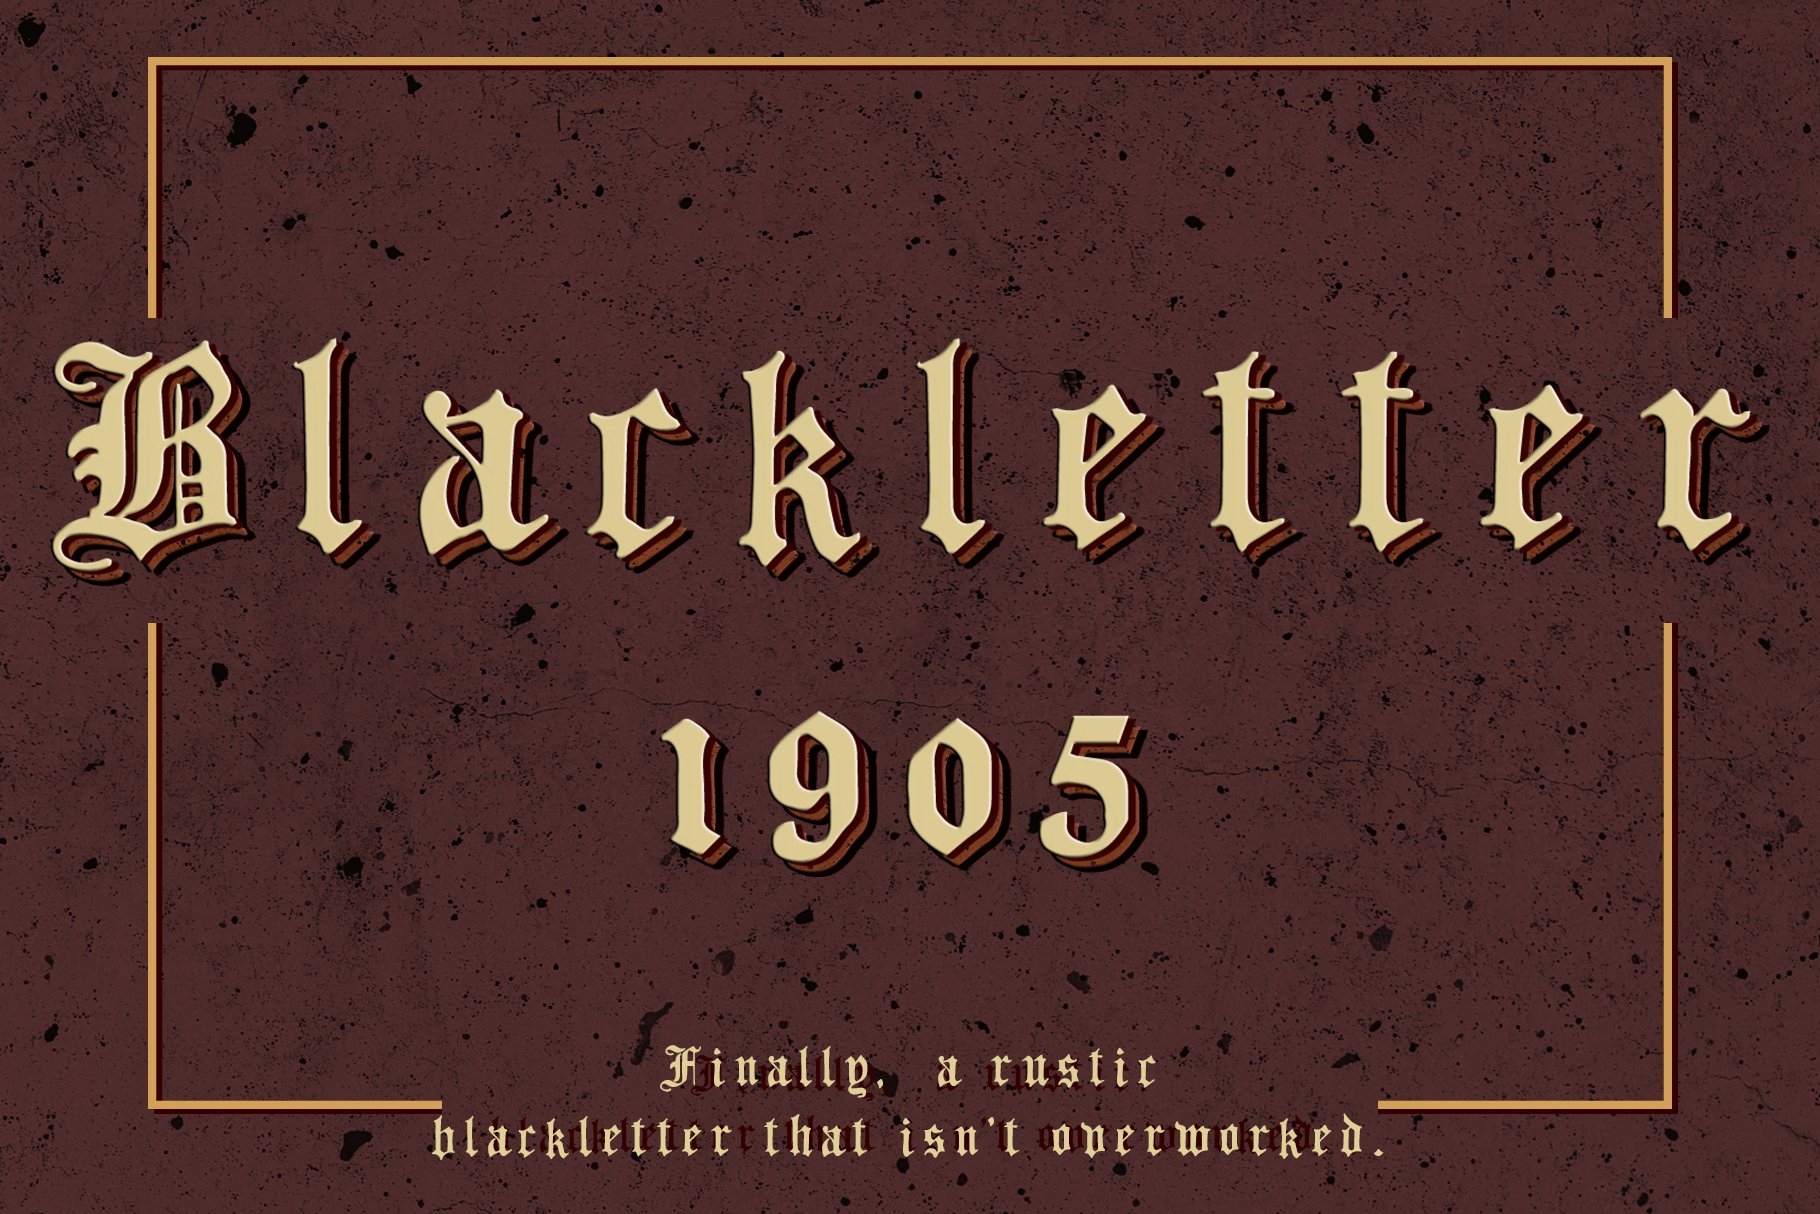 Blackletter 1905 Rustic Vintage Font cover image.